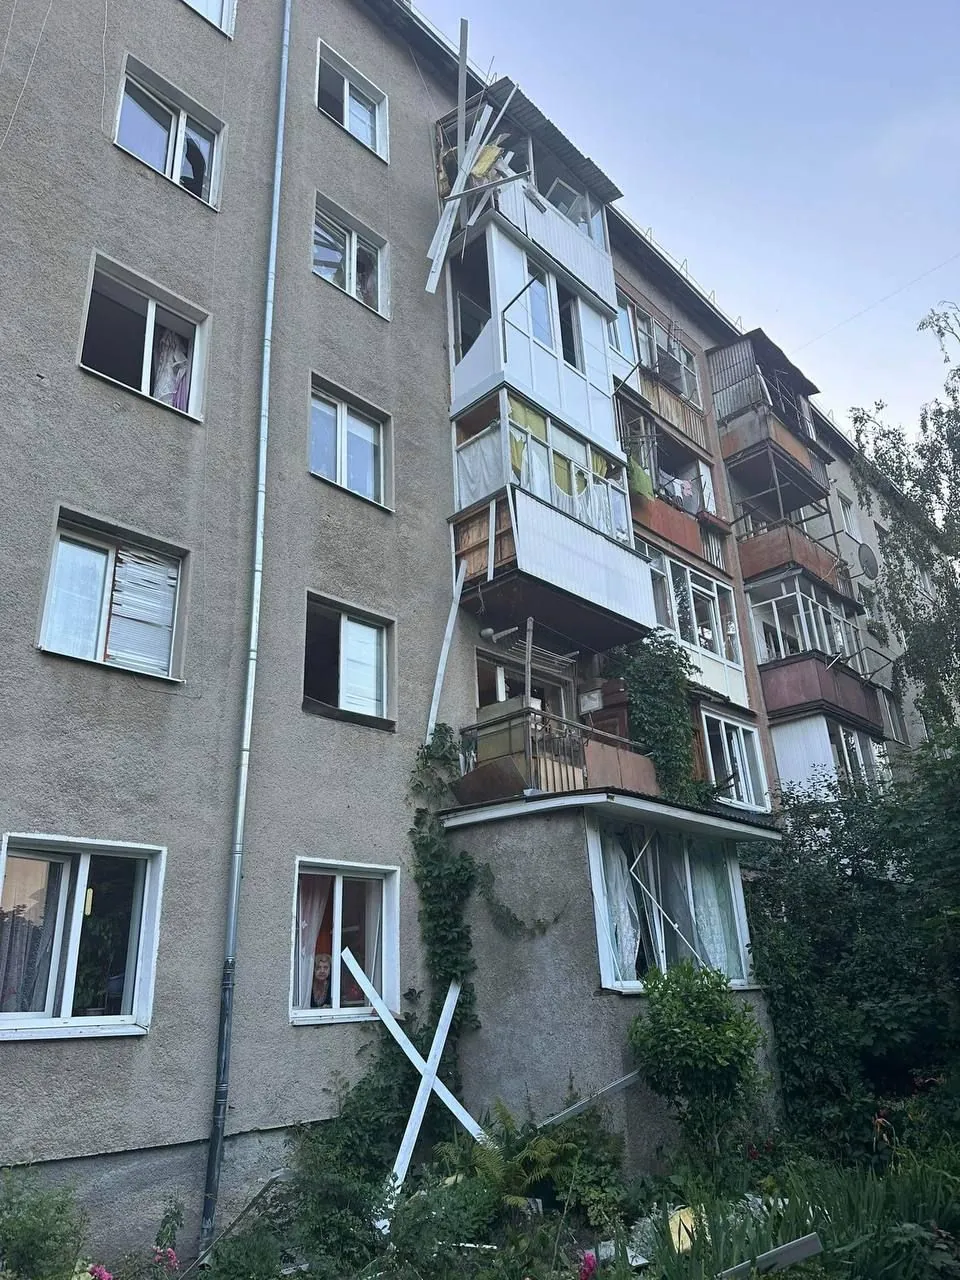 Enemy shelling in Ivano-Frankivsk: mayor gives details